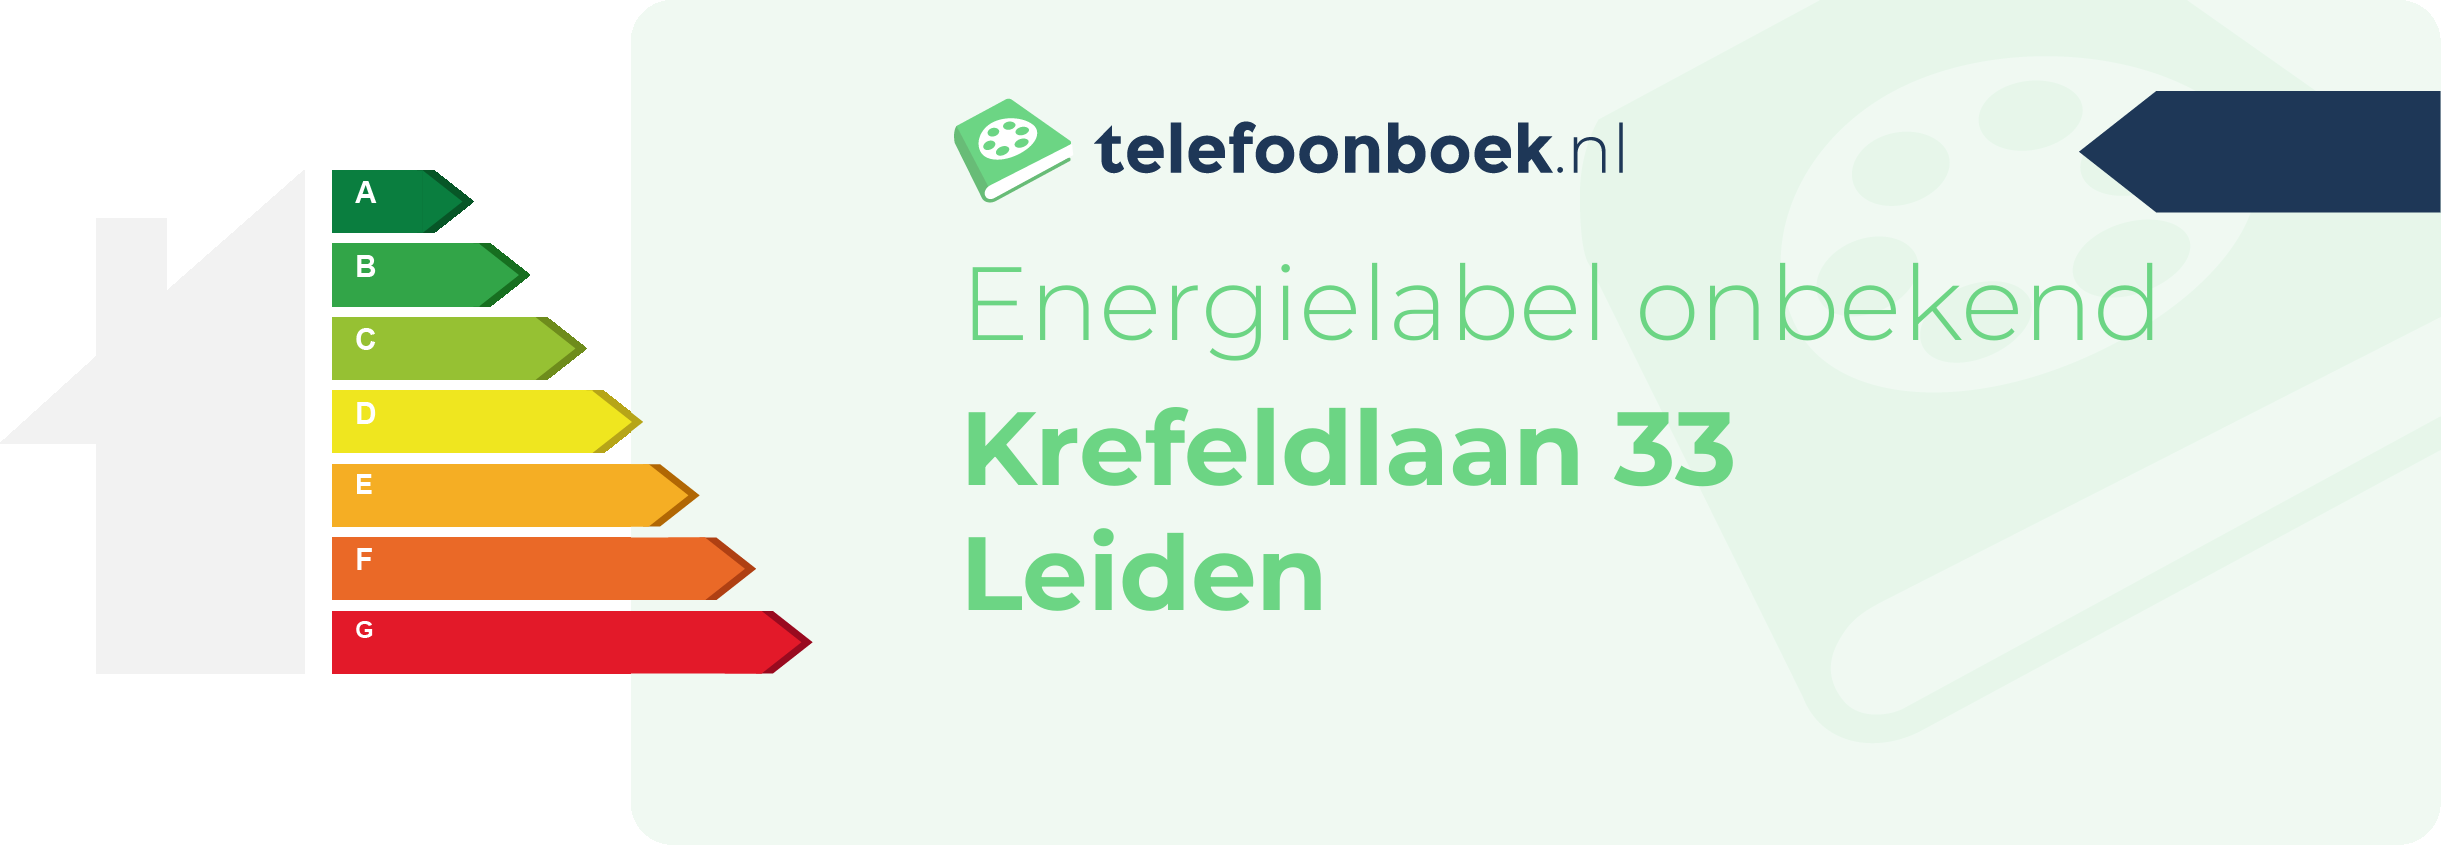 Energielabel Krefeldlaan 33 Leiden